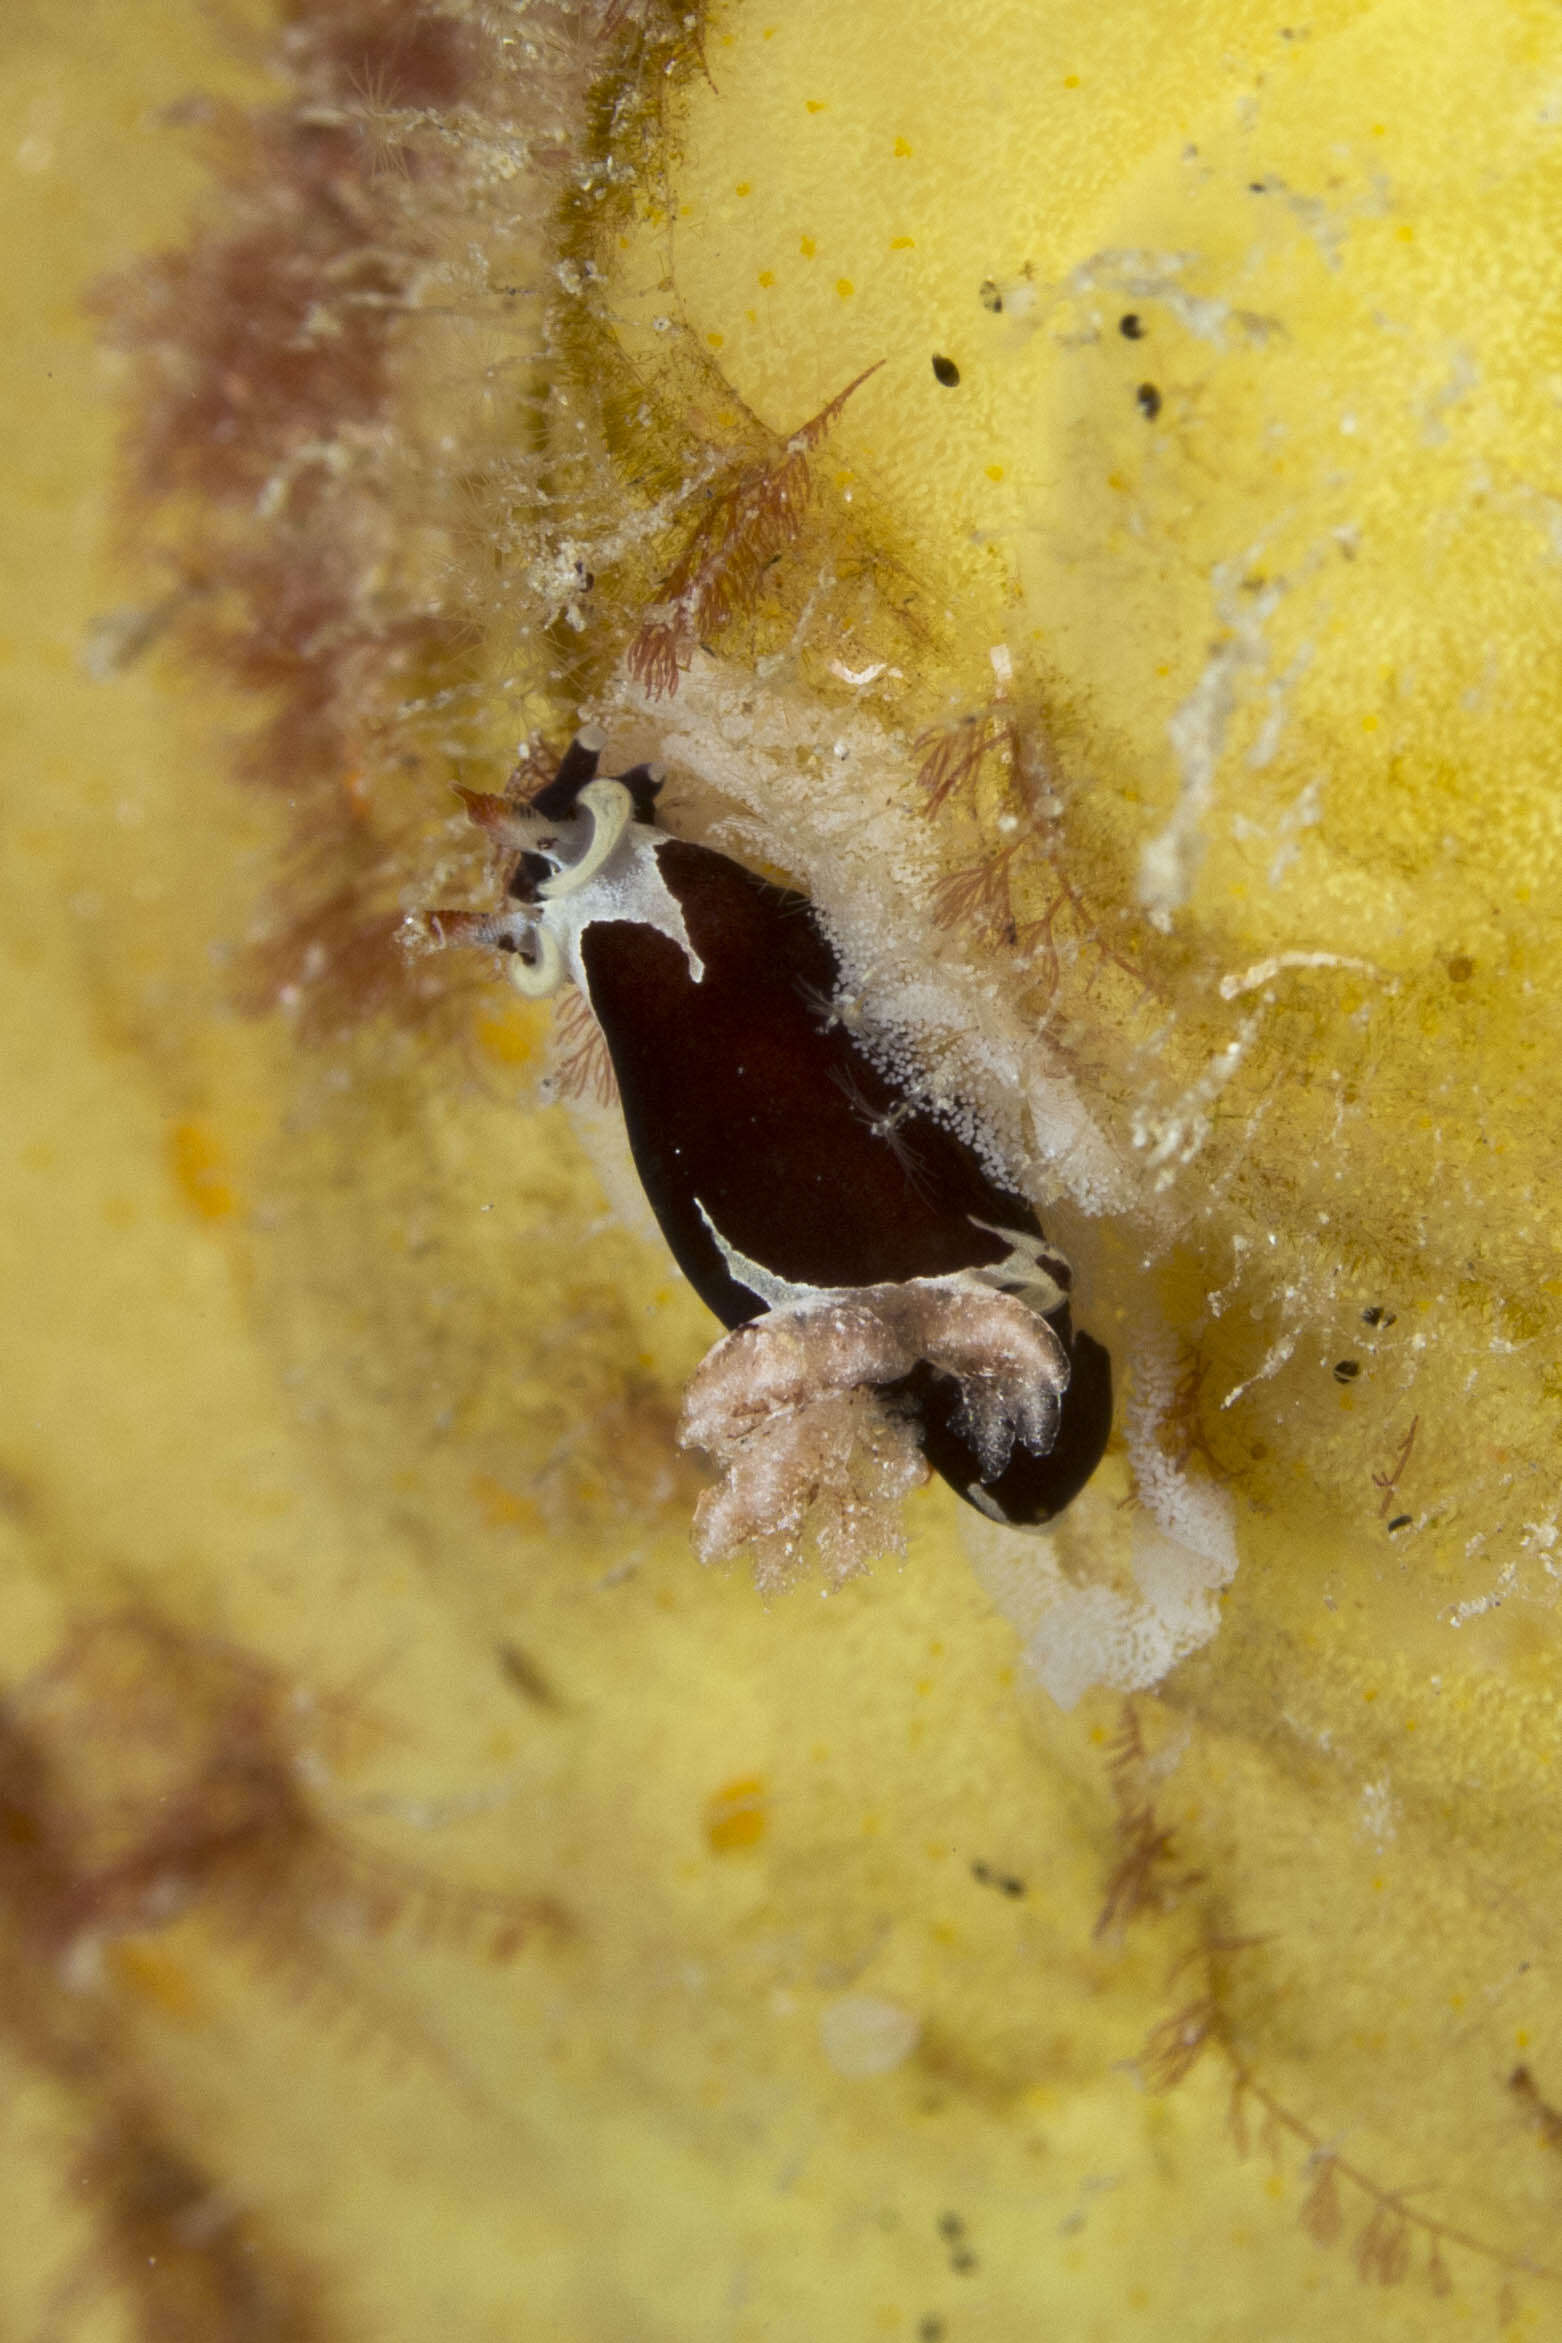 Image of camoflague slug